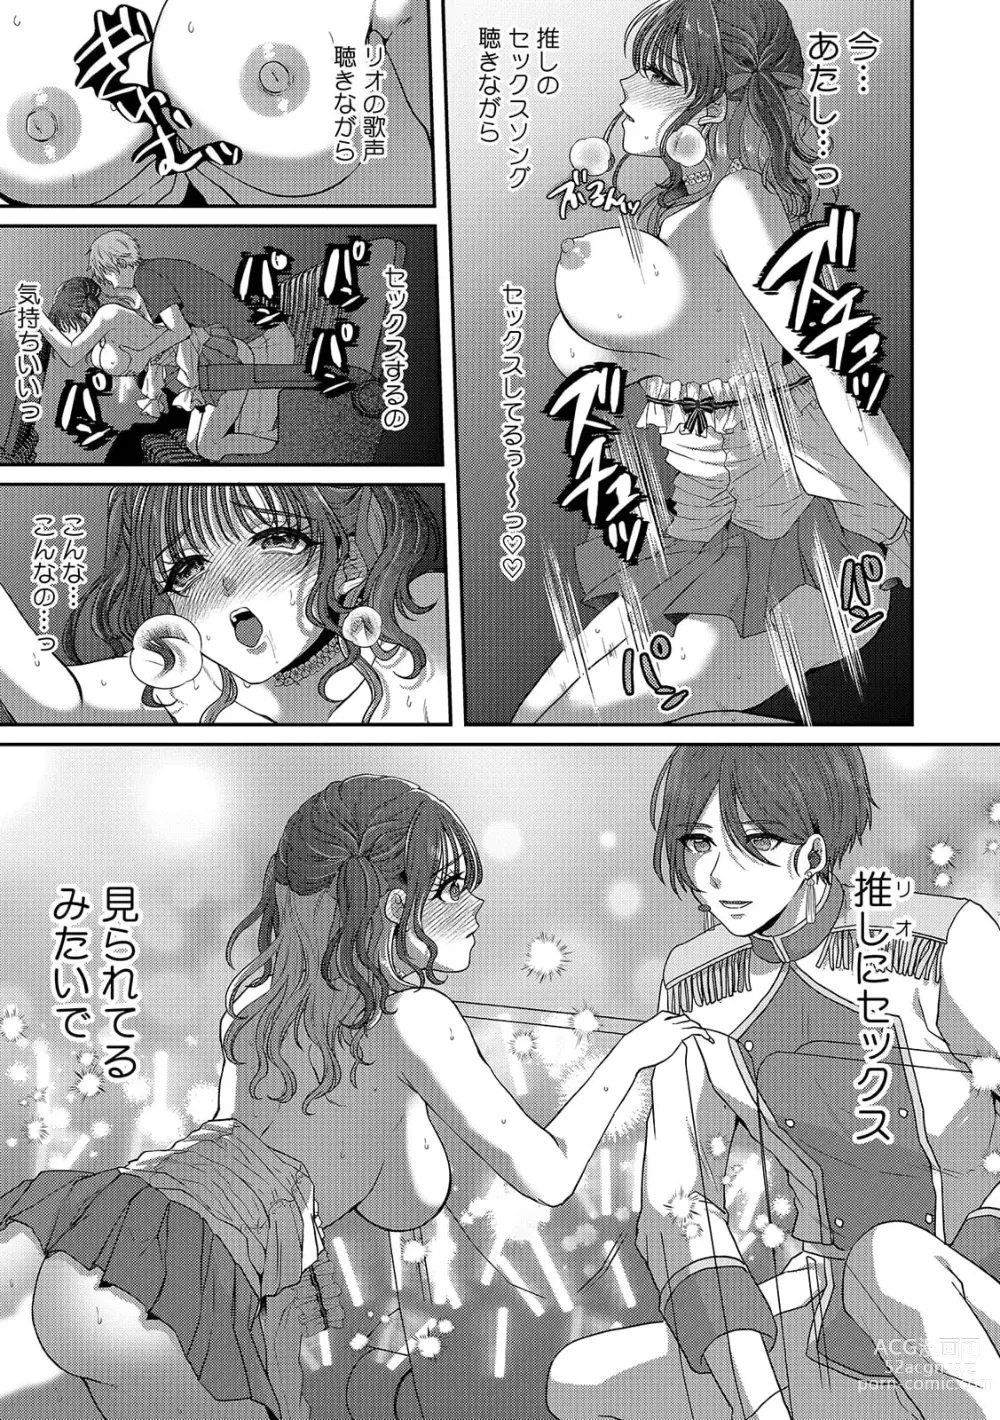 Page 9 of manga Doushite... Muriyari nanoni... Nurechau no...